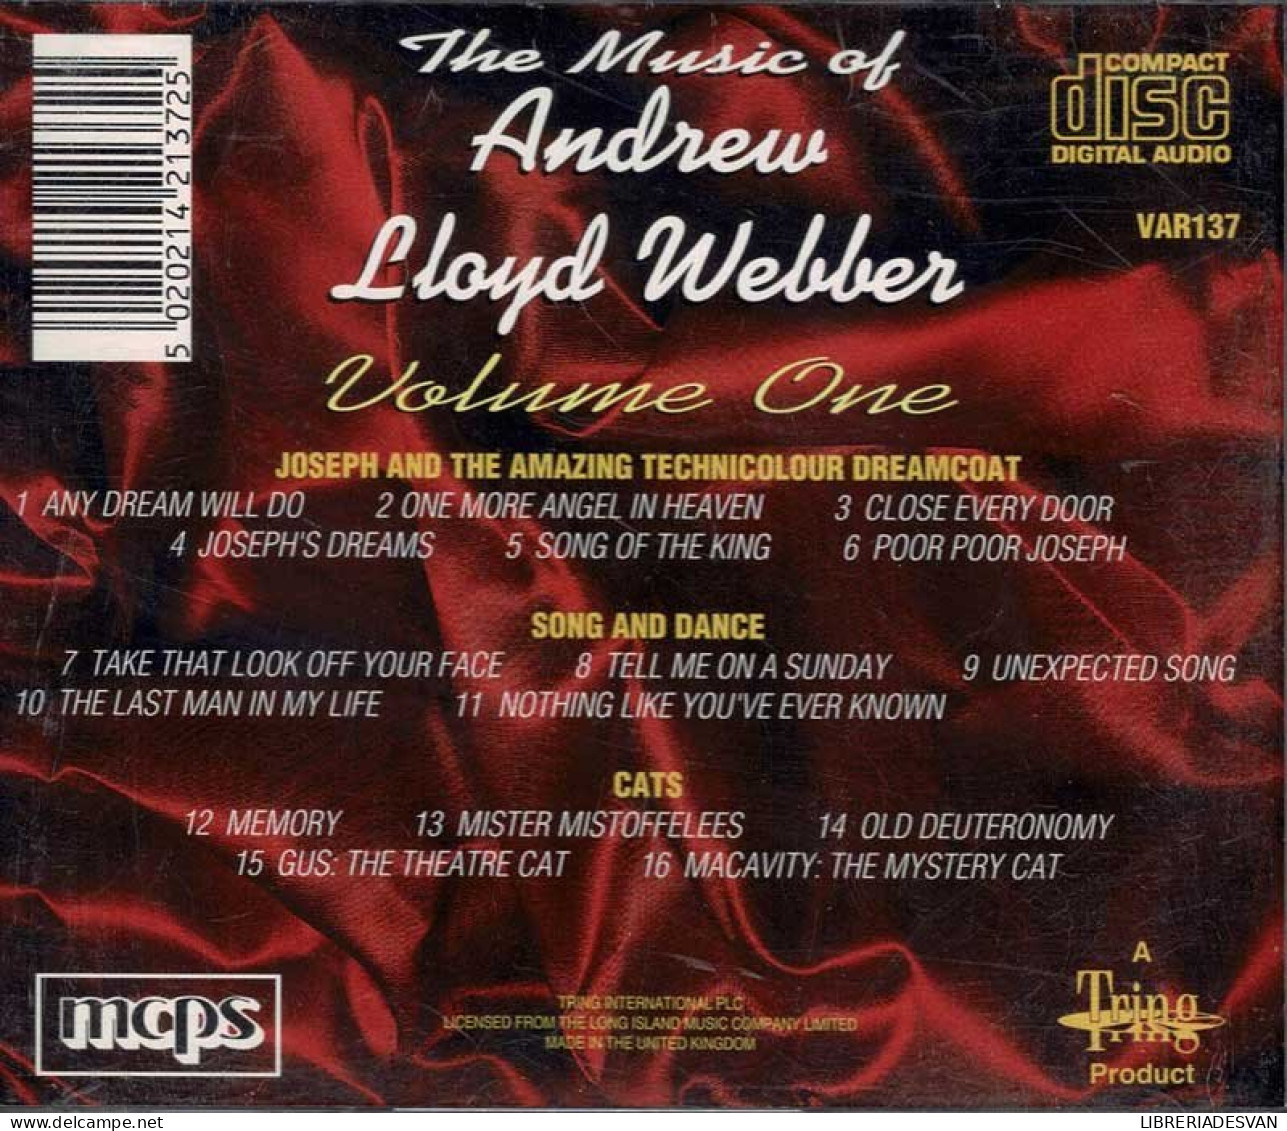 Andrew Lloyd Webber - The Music Of Andrew Lloyd Webber Volume One. CD - Filmmusik